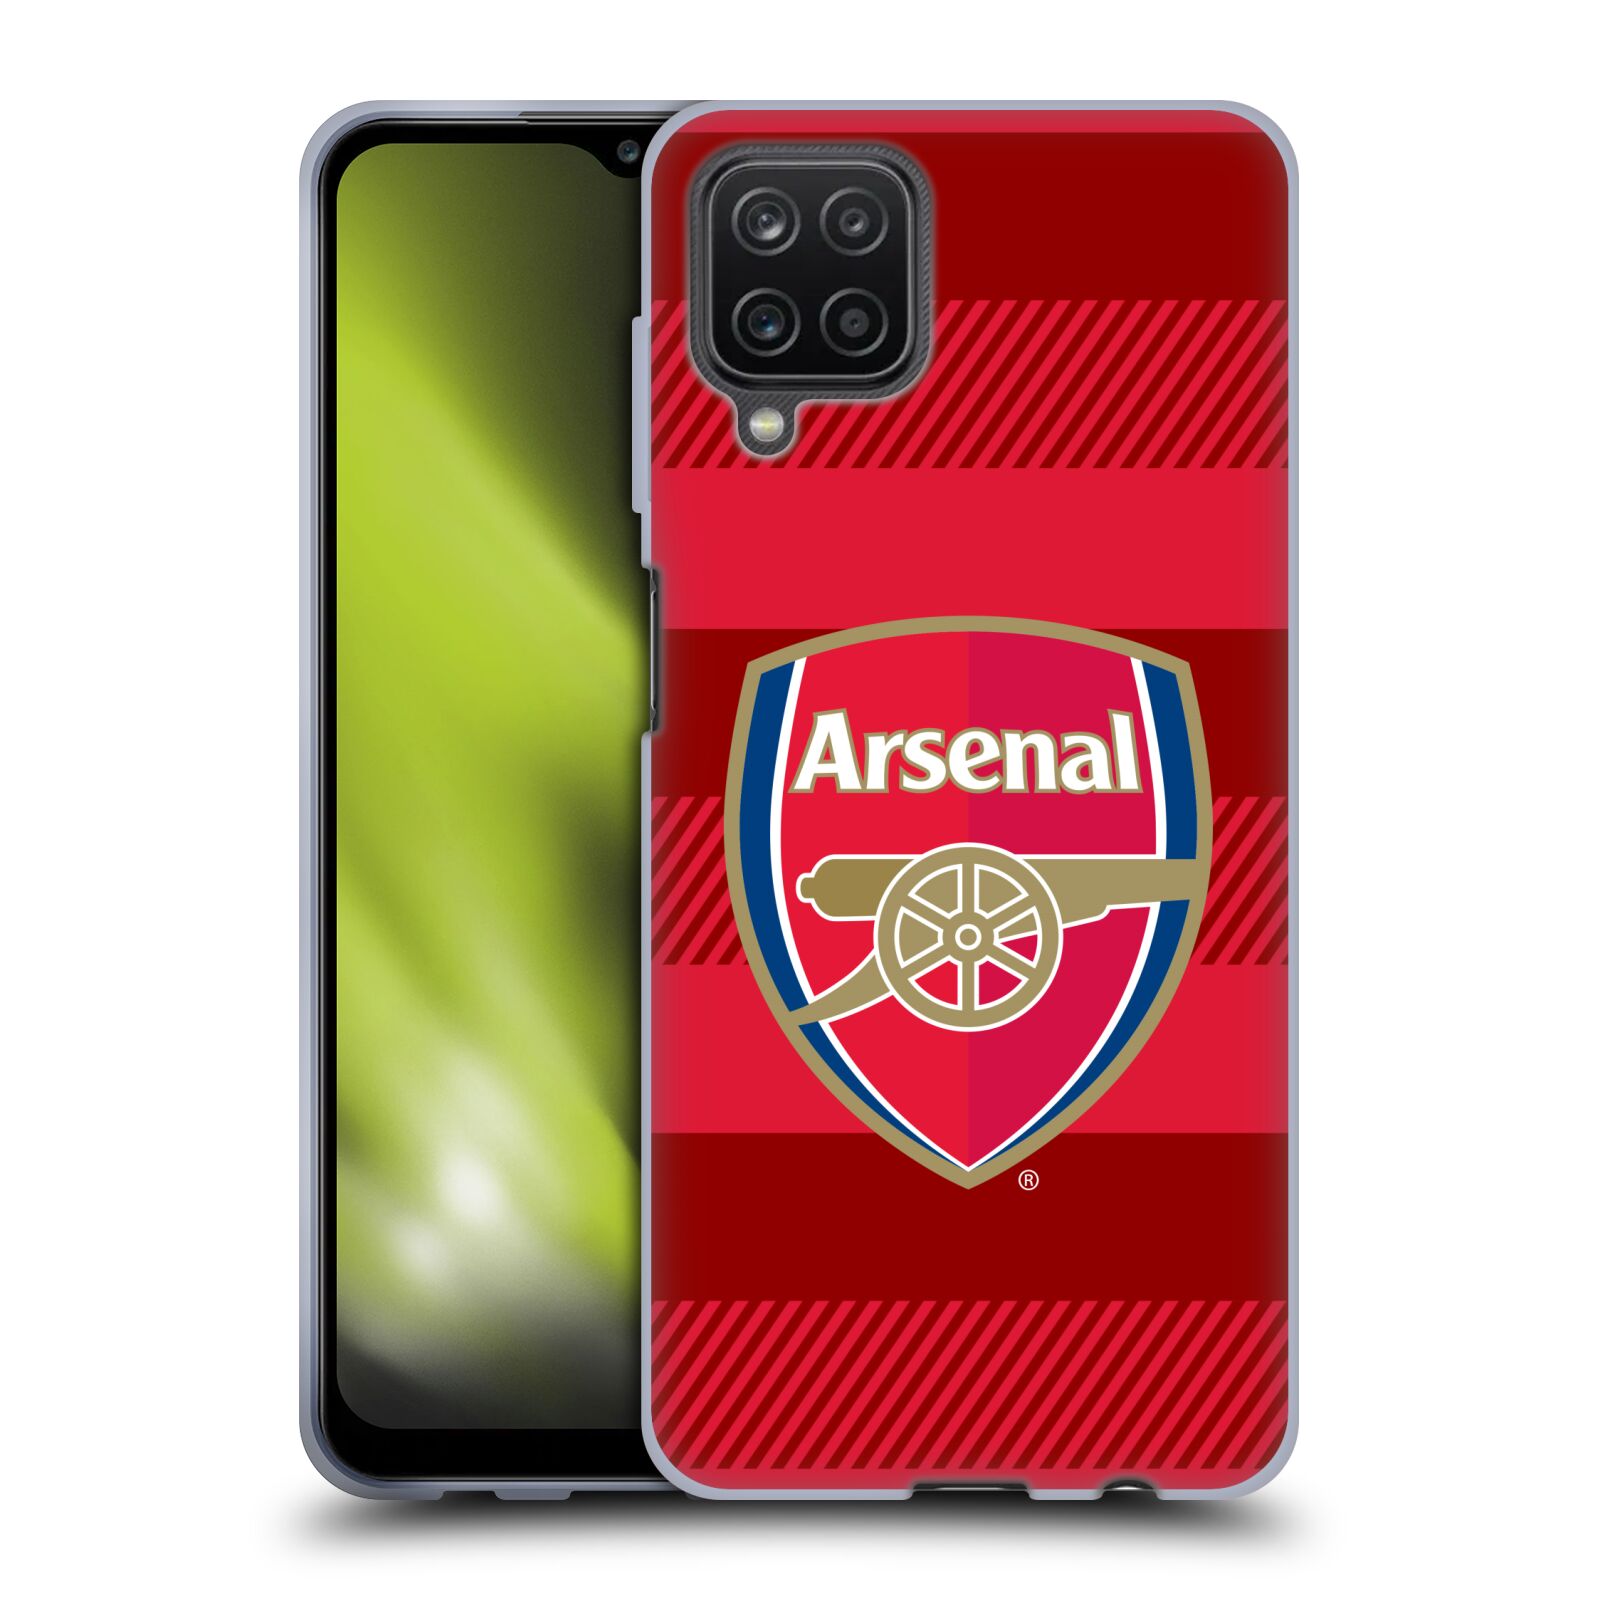 Silikonové pouzdro na mobil Samsung Galaxy A12 - Head Case - Arsenal FC - Logo s pruhy (Silikonový kryt, obal, pouzdro na mobilní telefon s motivem klubu Arsenal FC - Logo s pruhy pro Samsung Galaxy A12)